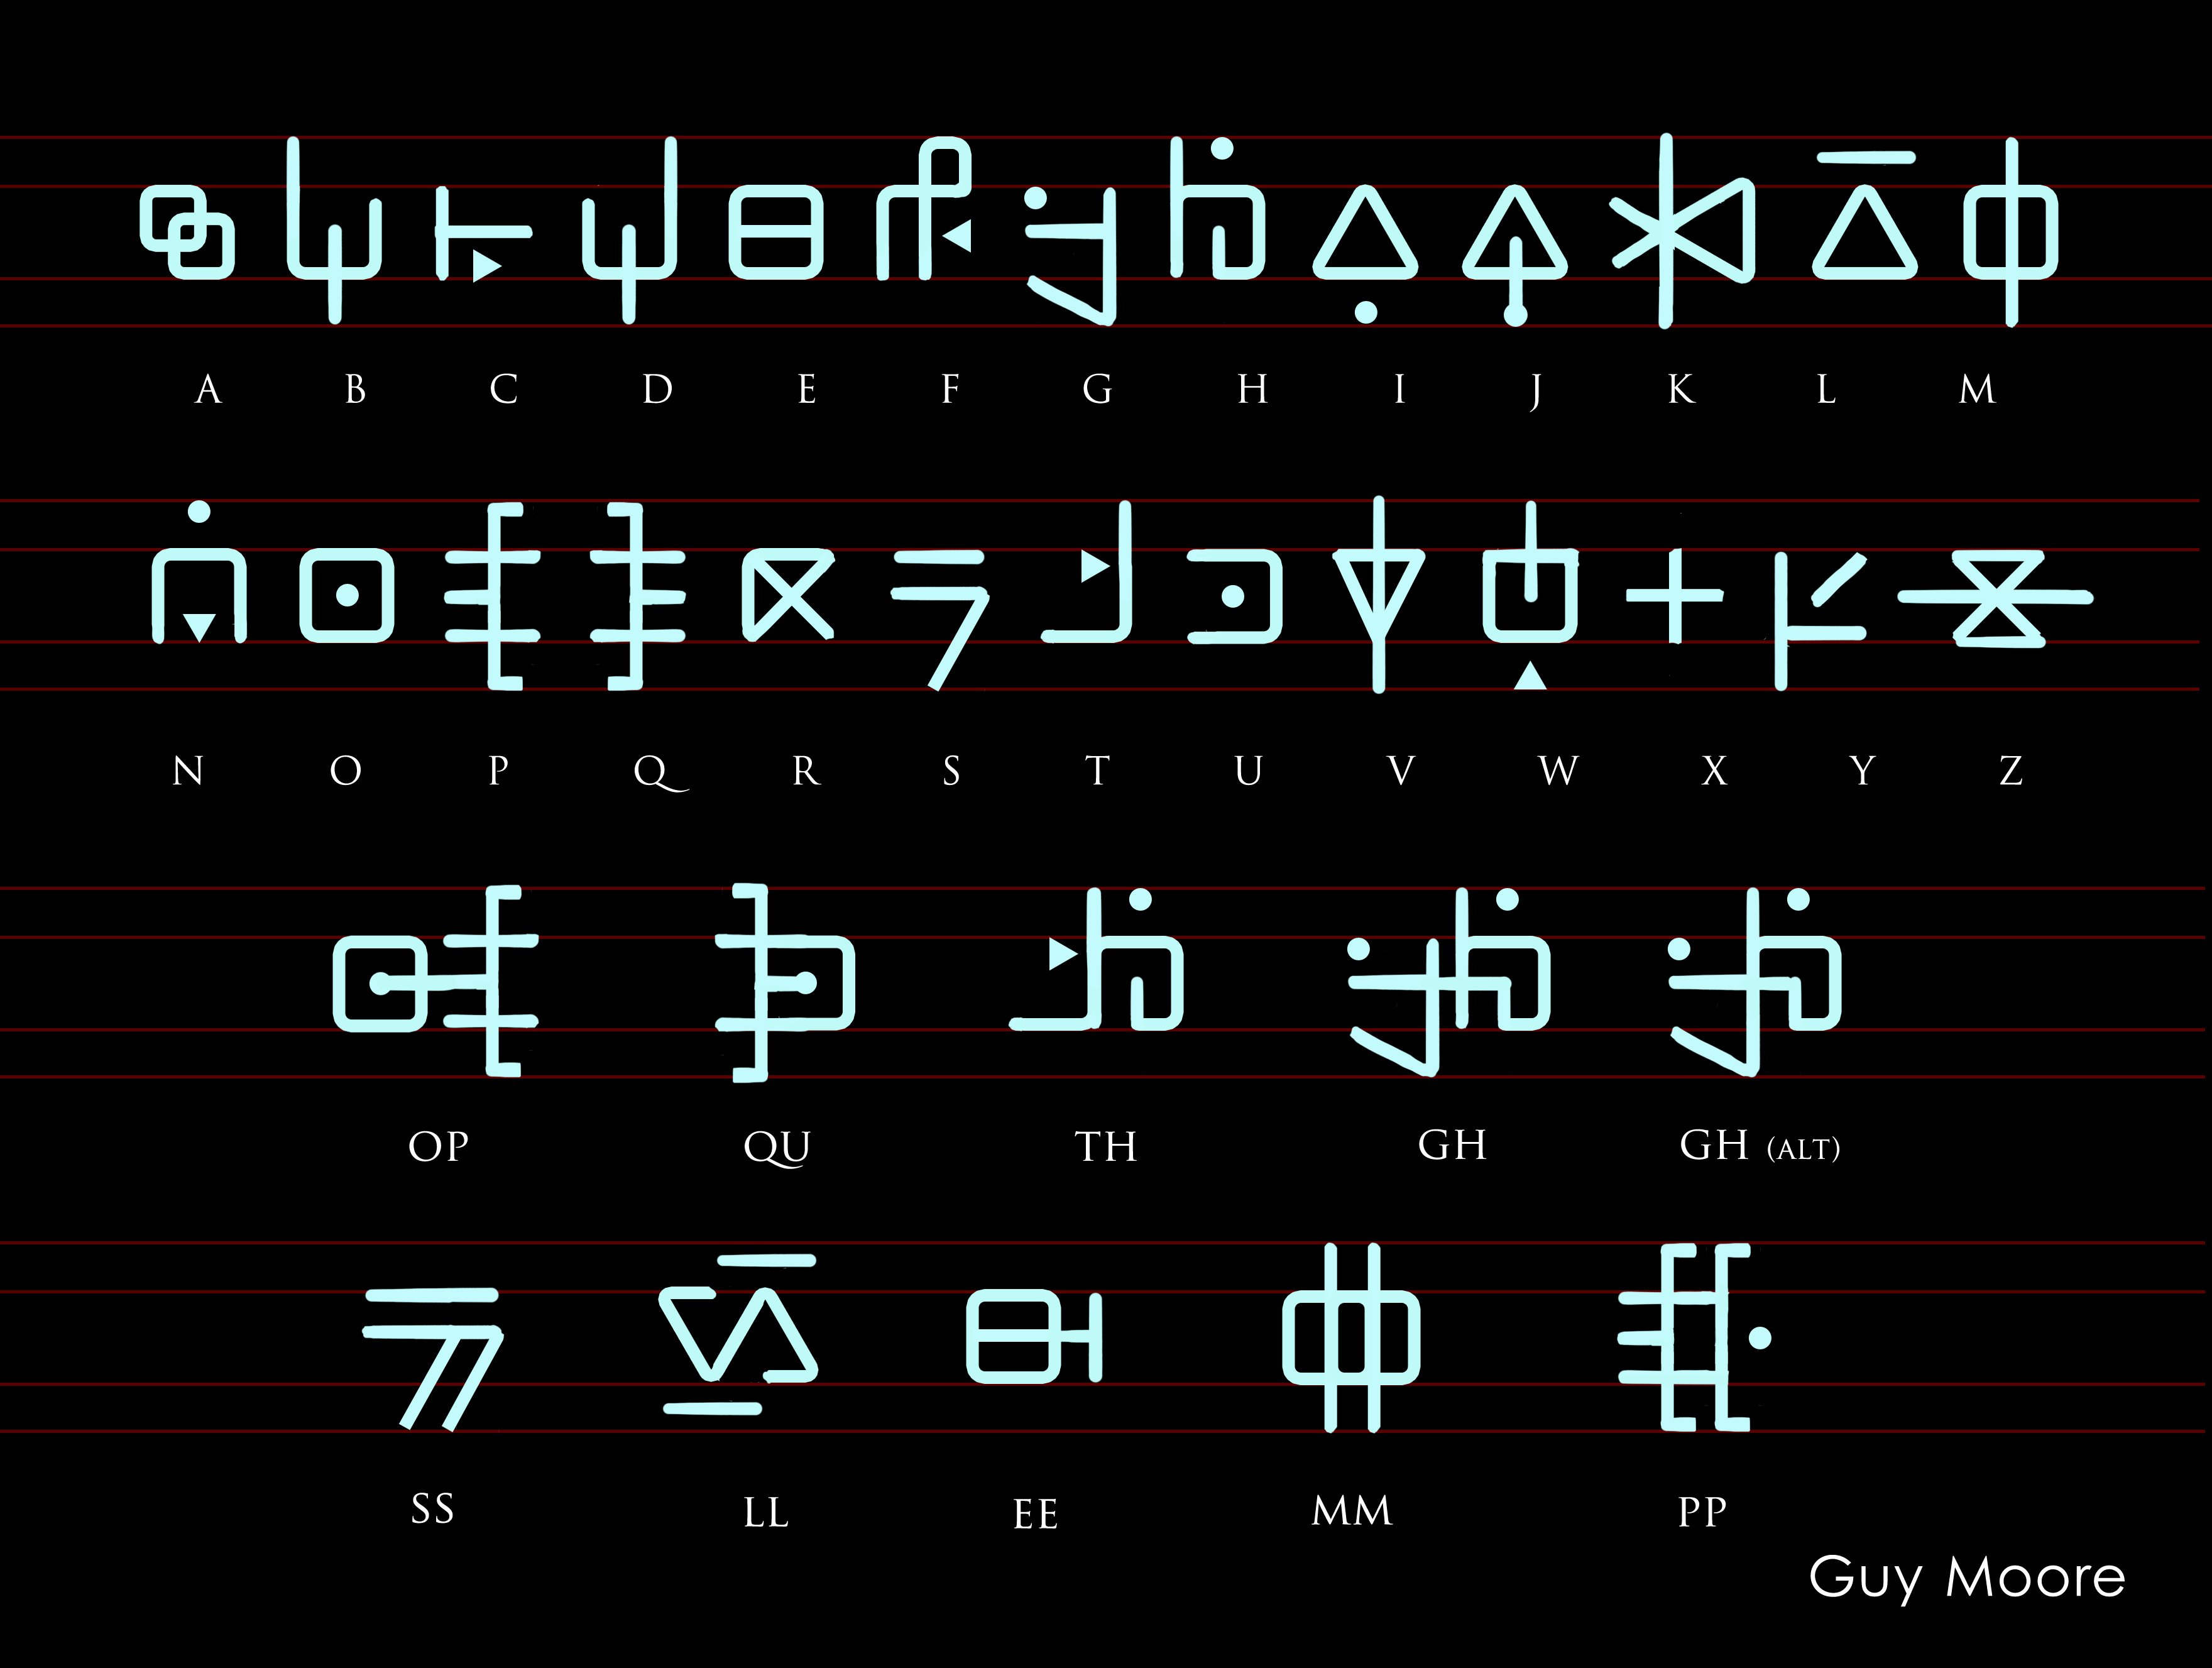 Замена букв символами. Инопланетный шрифт. Инопланетные иероглифы. Письменность инопланетян. Инопланетянский алфавит.